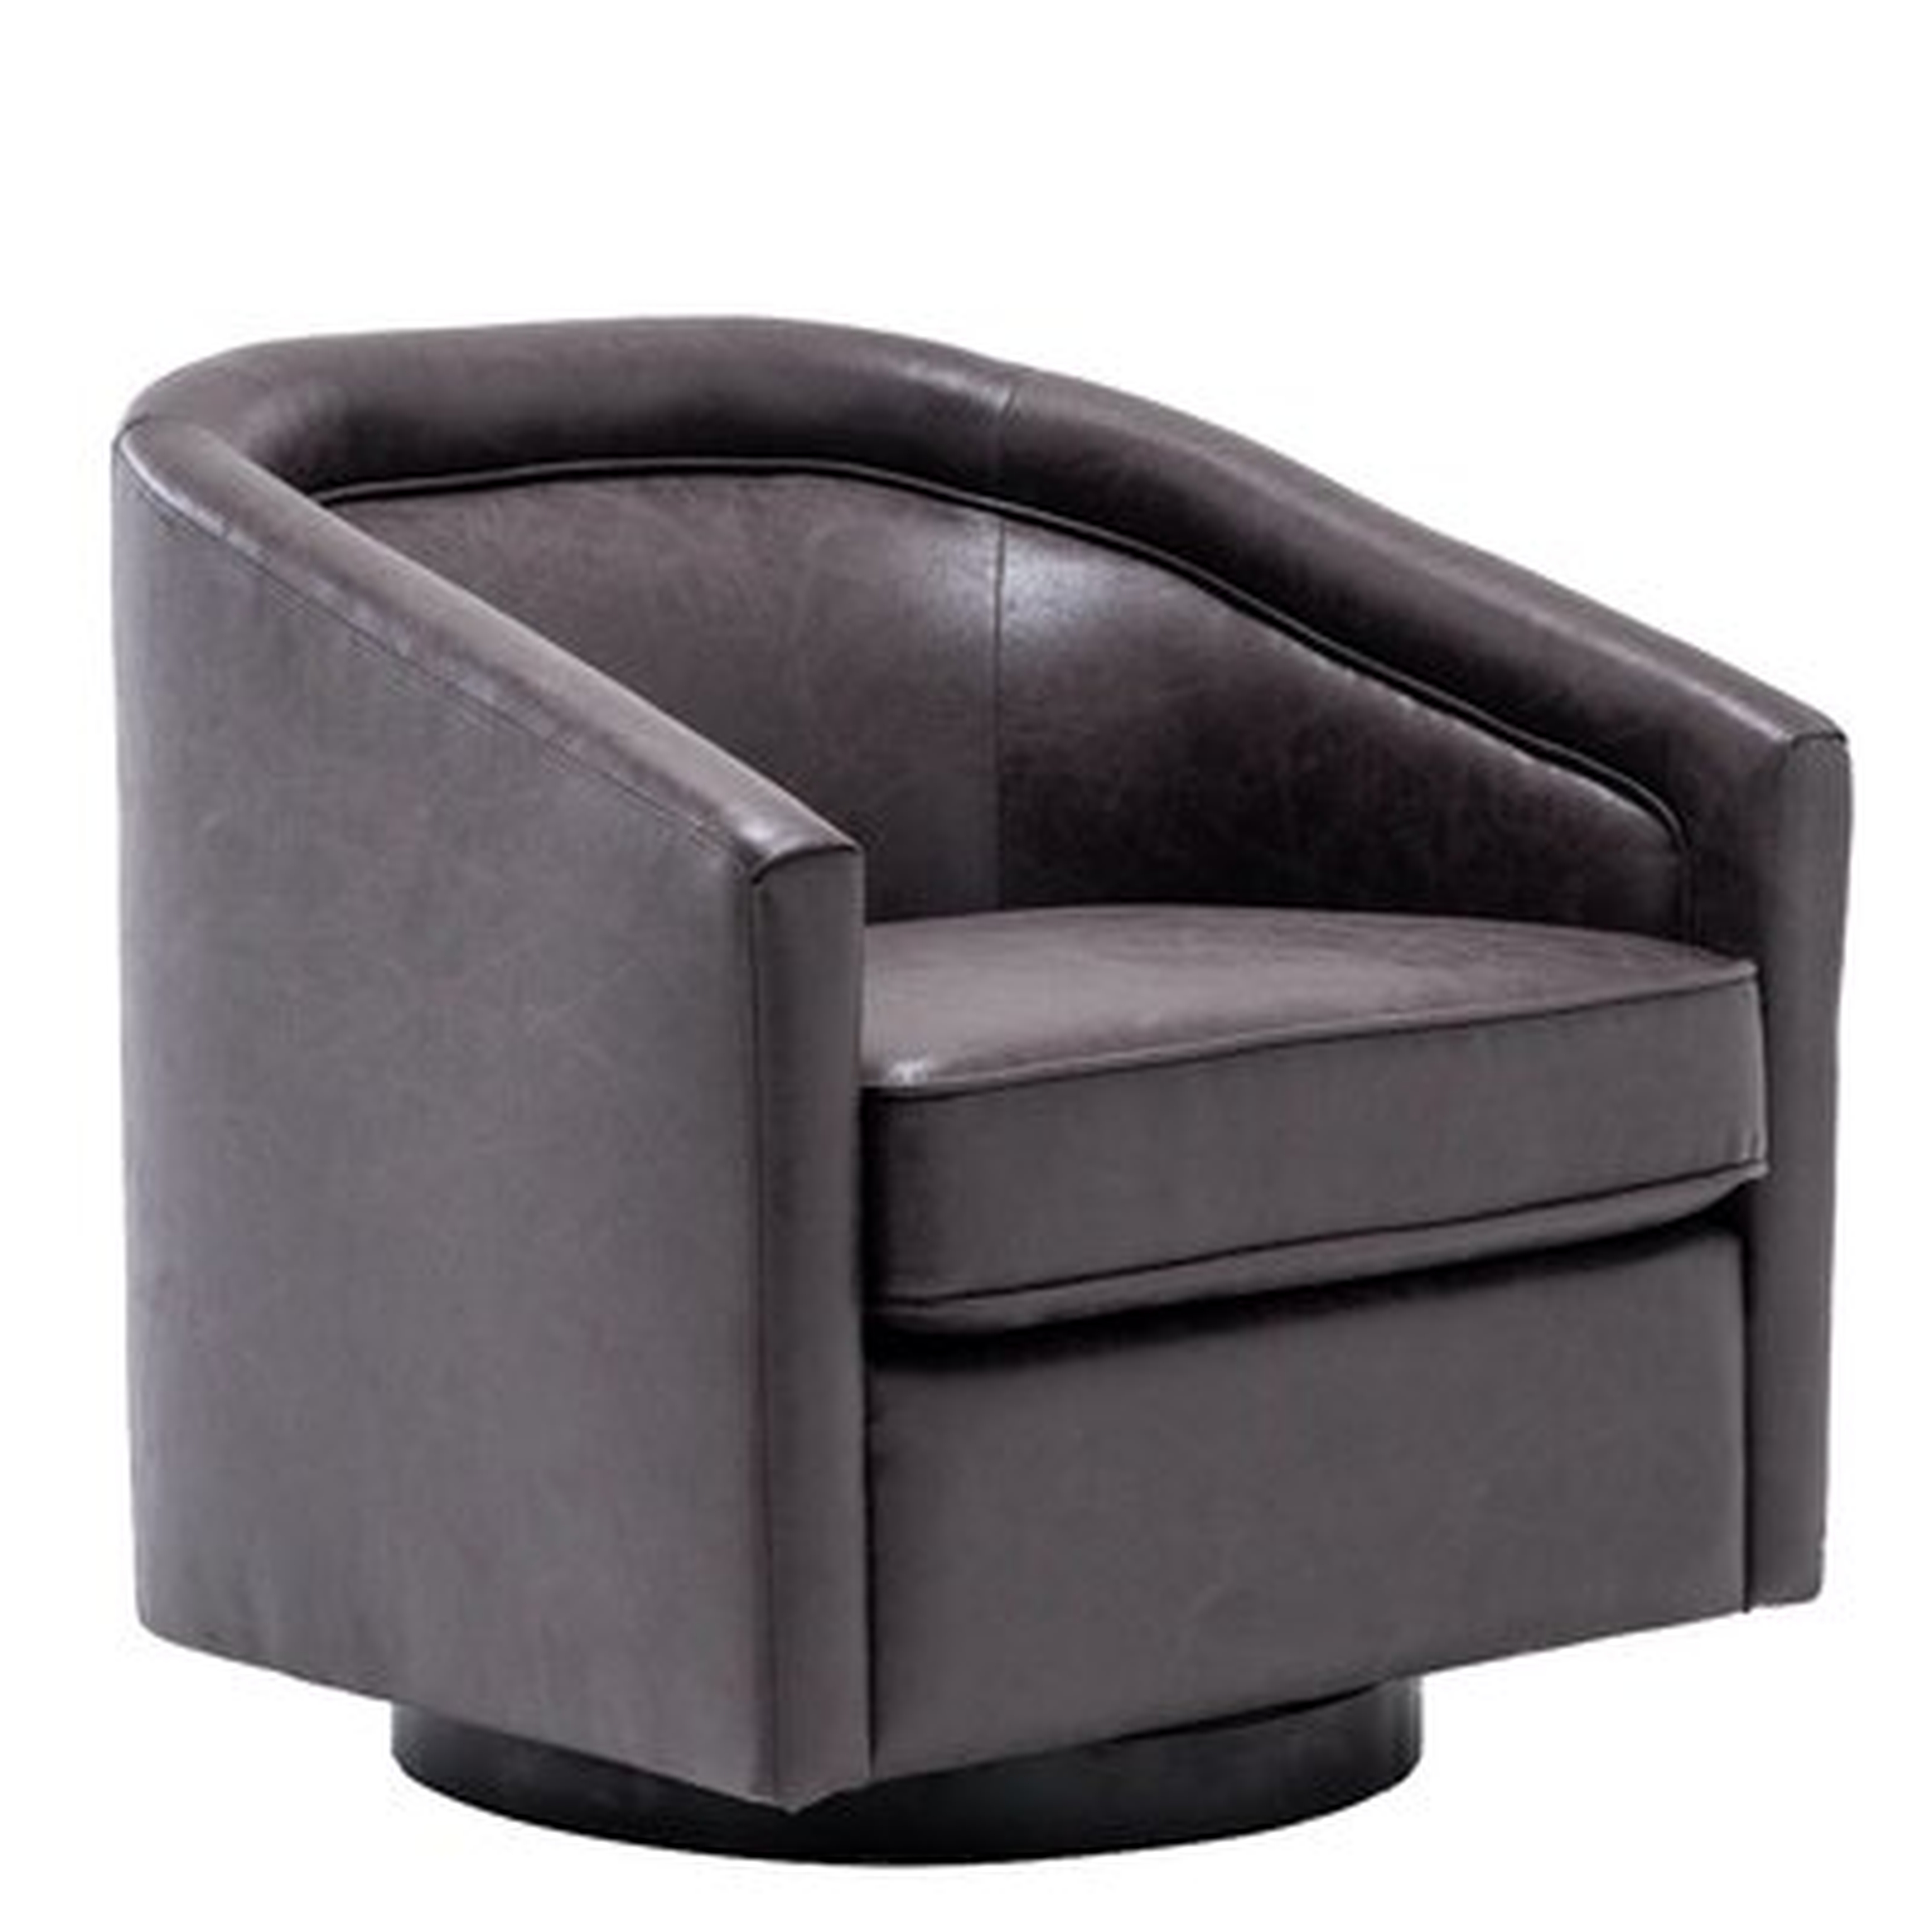 Hazley Barrel Swivel Chair - Wayfair